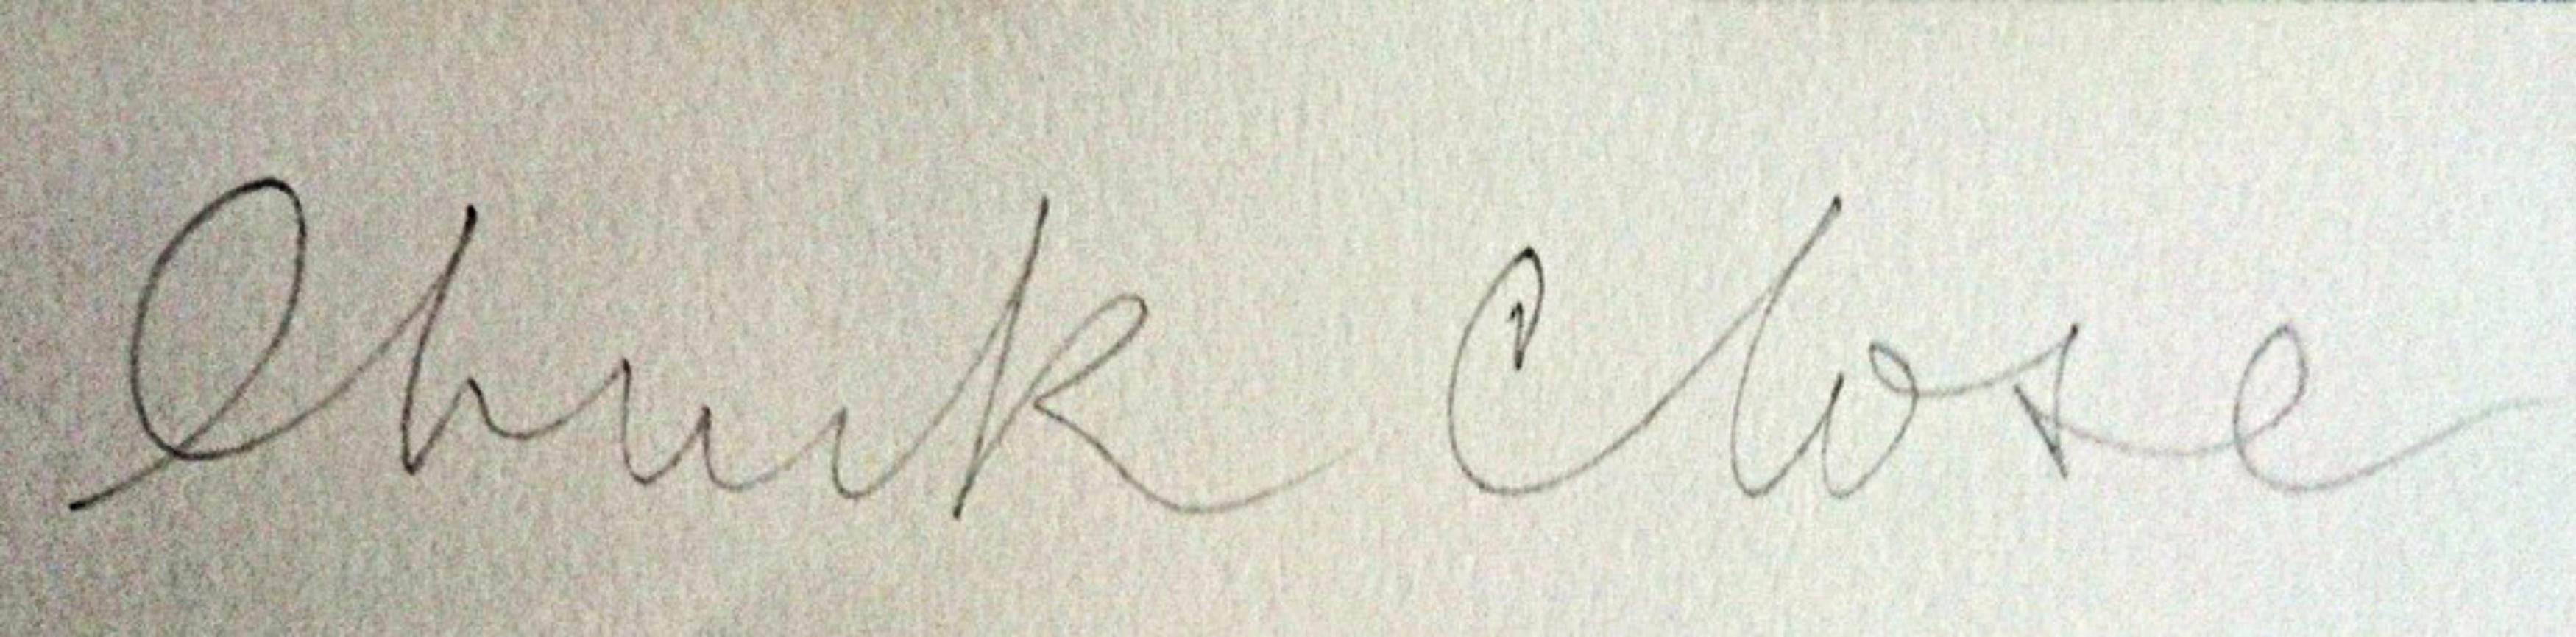 Sin título del Portfolio Médicos del Mundo, firmado y numerado a mano Realismo pop - Print de Chuck Close